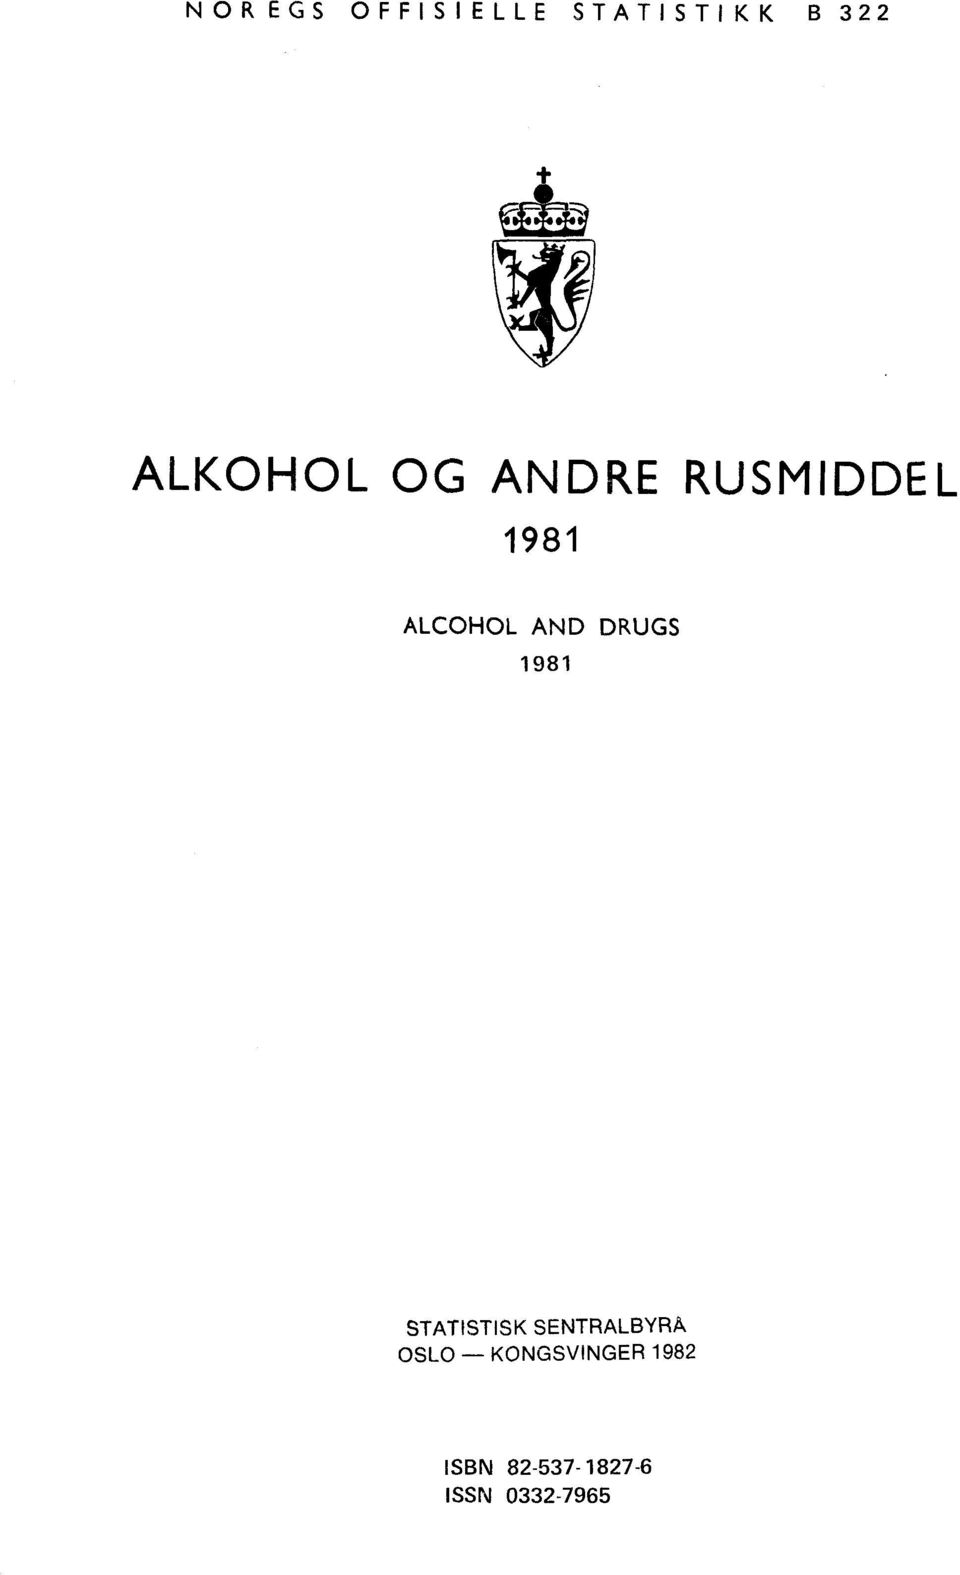 AND DRUGS 1981 STATISTISK SENTRALBYRA OSLO